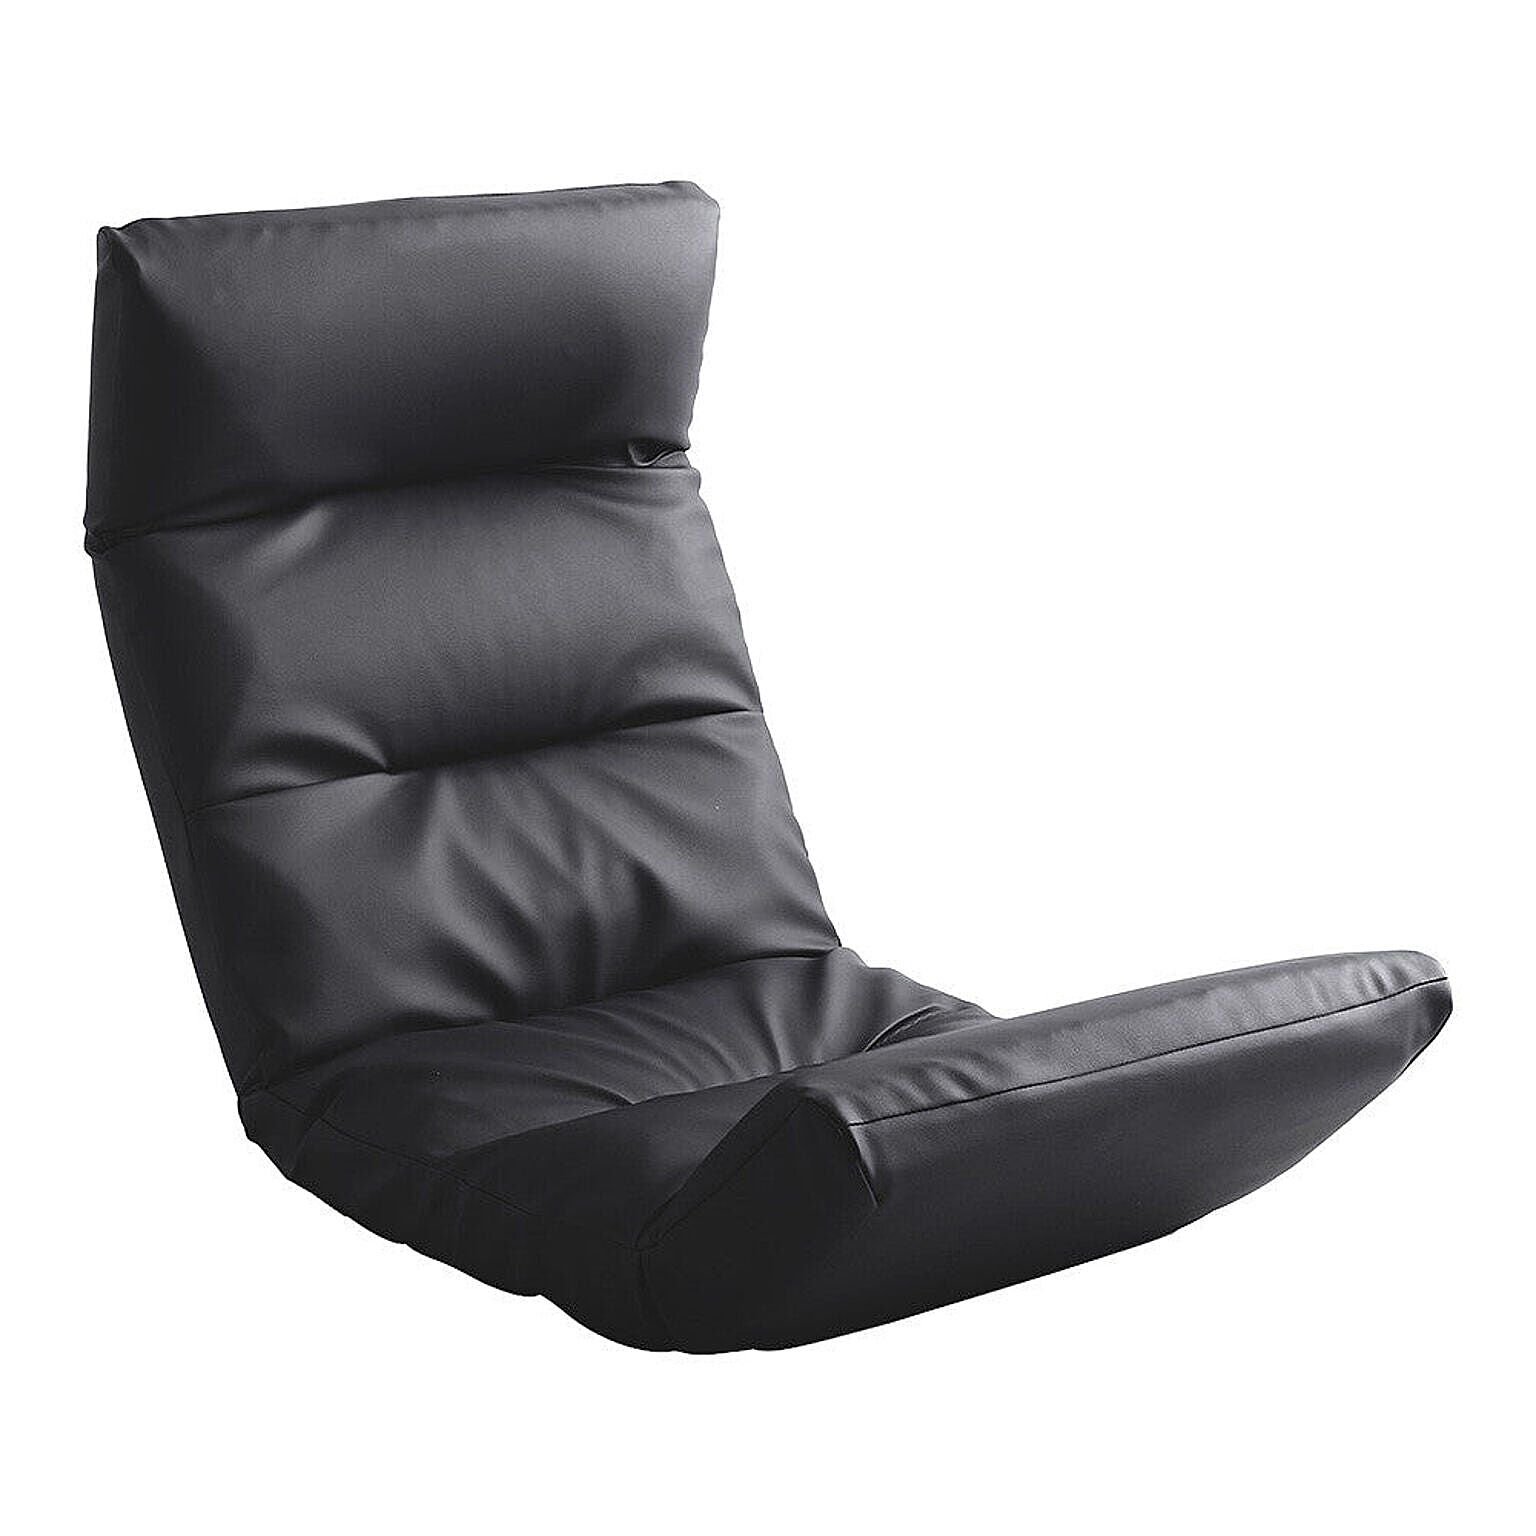 日本製リクライニング座椅子（布地、レザー）14段階調節ギア、転倒防止機能付き | Moln-モルン- Up type